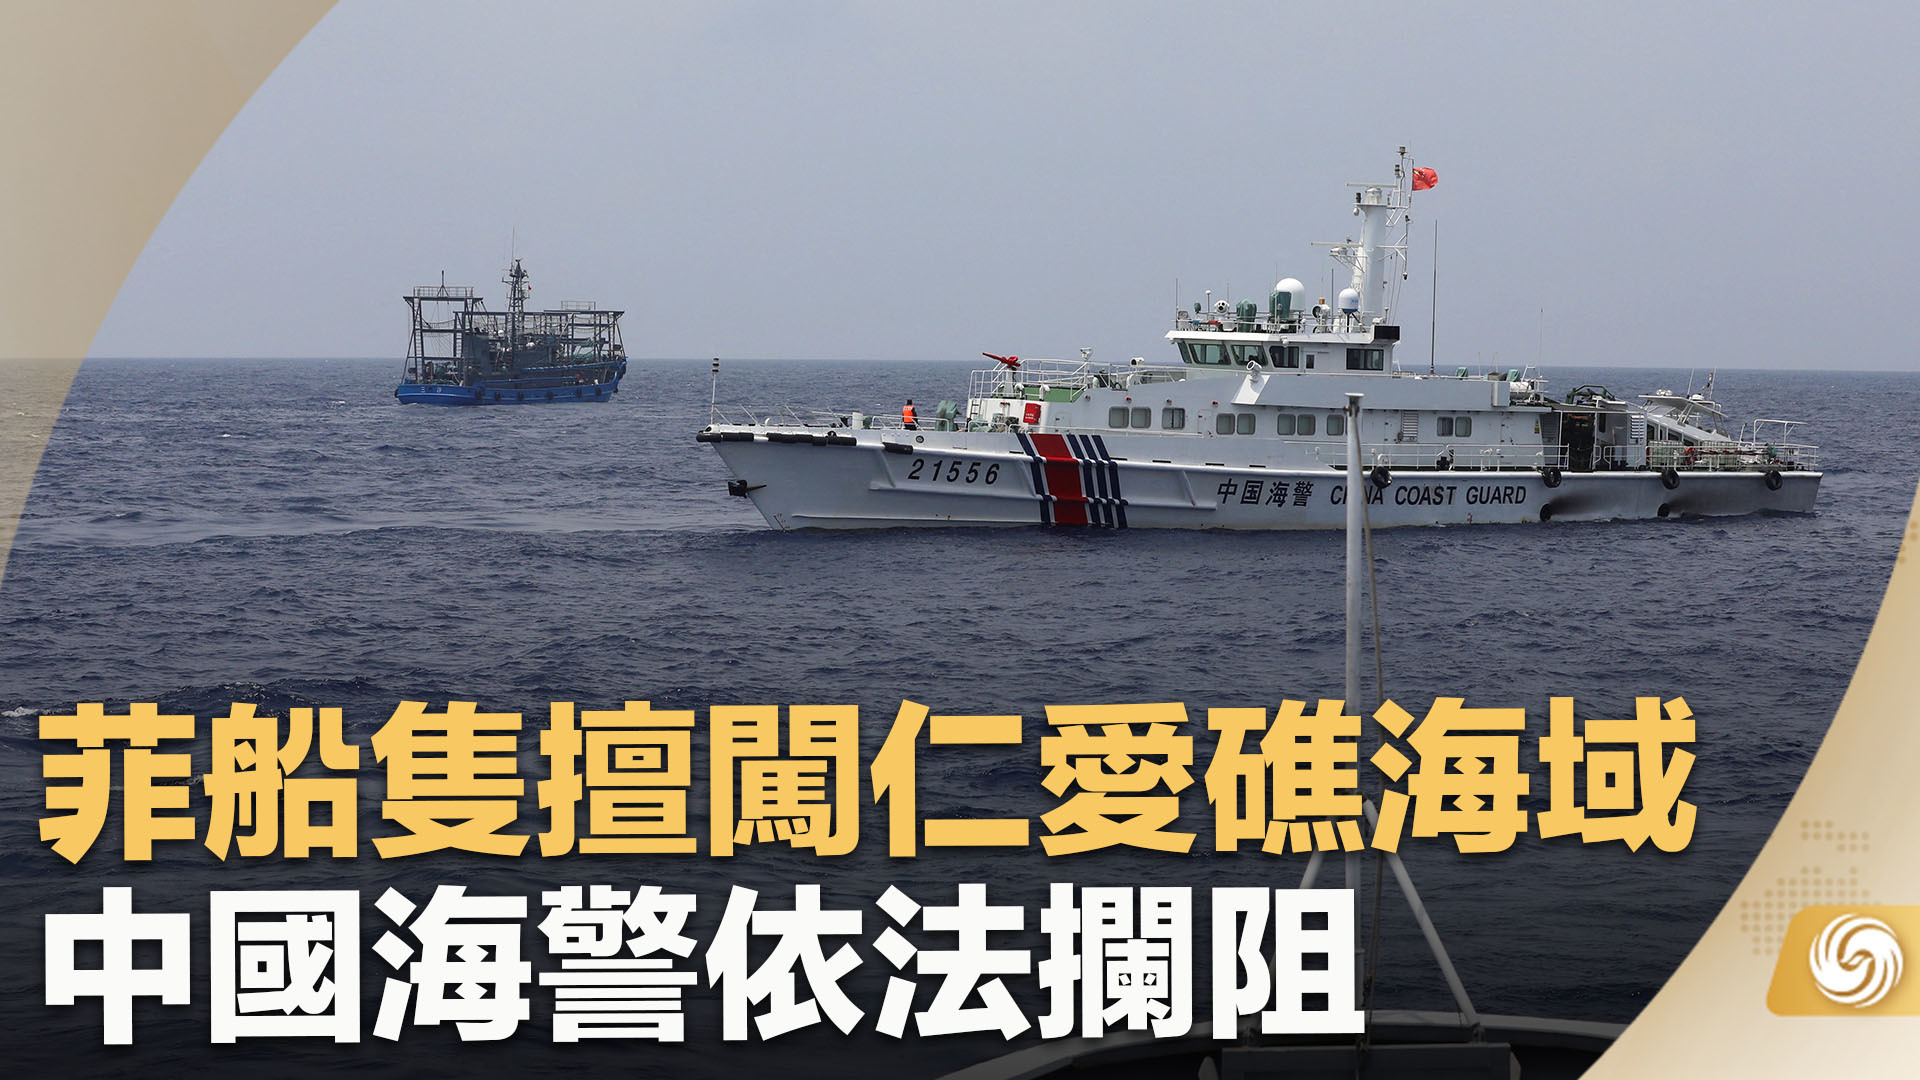 菲船只擅闯仁爱礁海域 中国海警依法拦阻